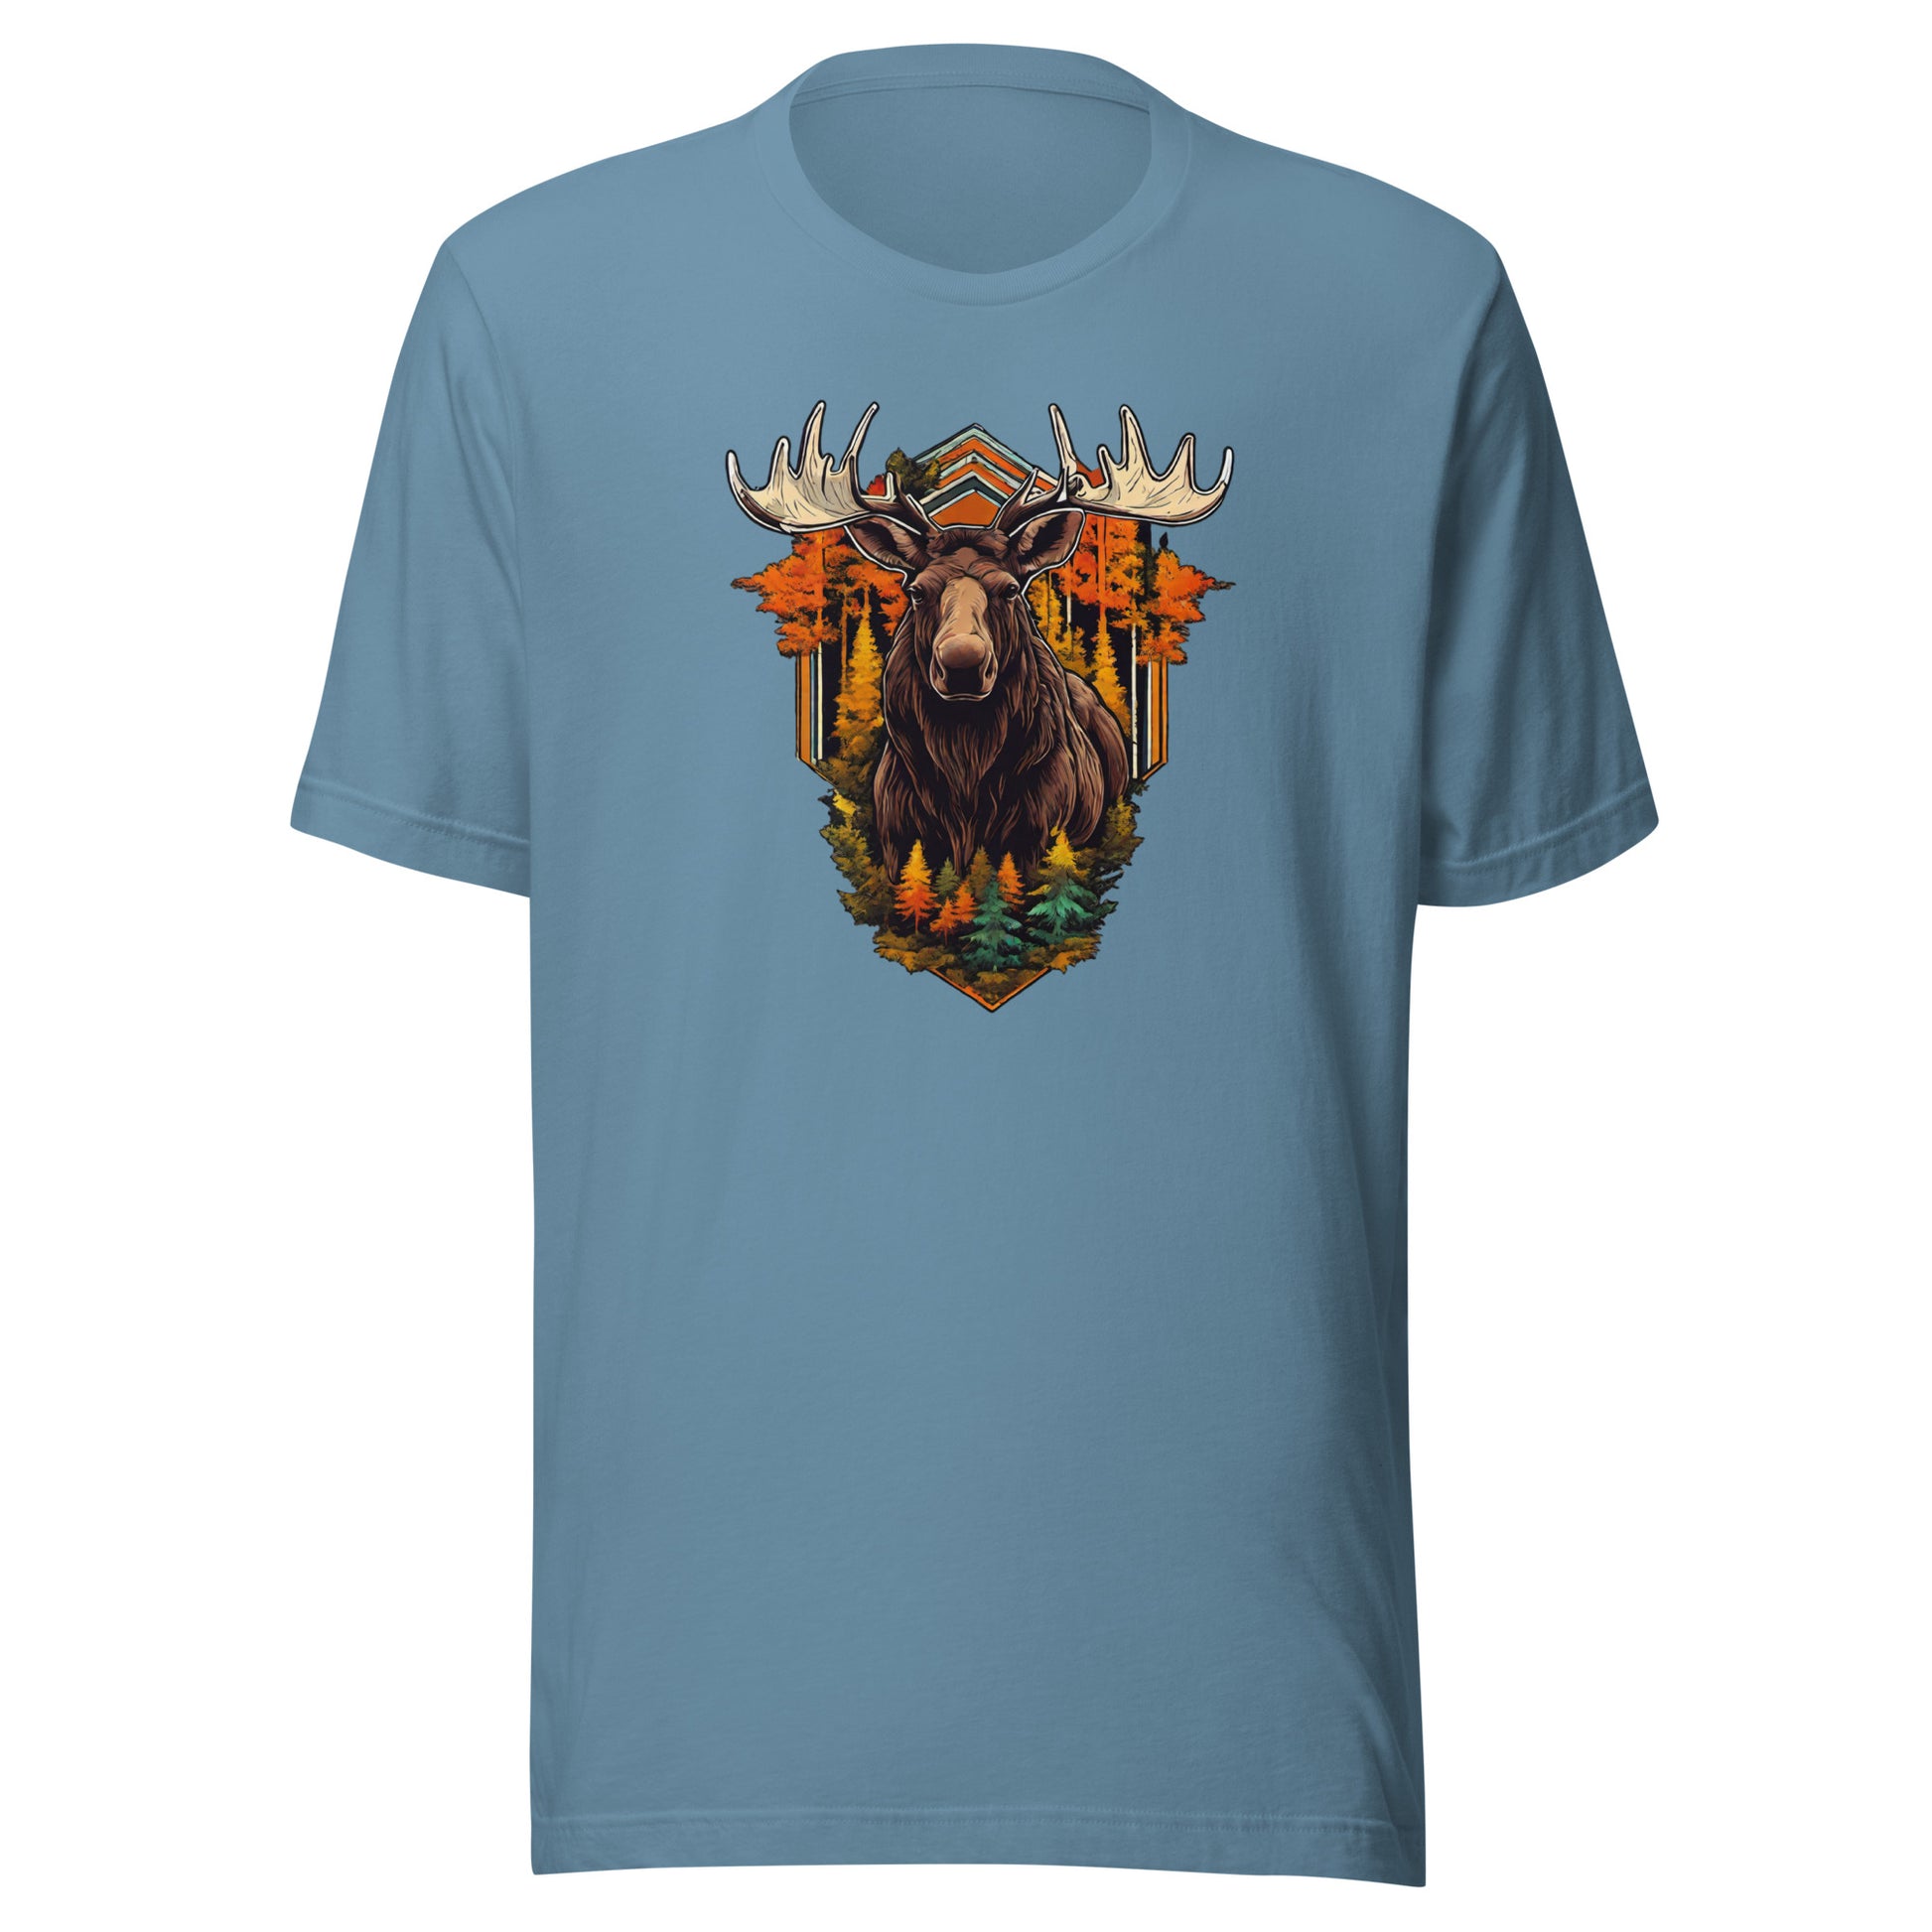 Moose & Forest Emblem Men's T-Shirt Steel Blue